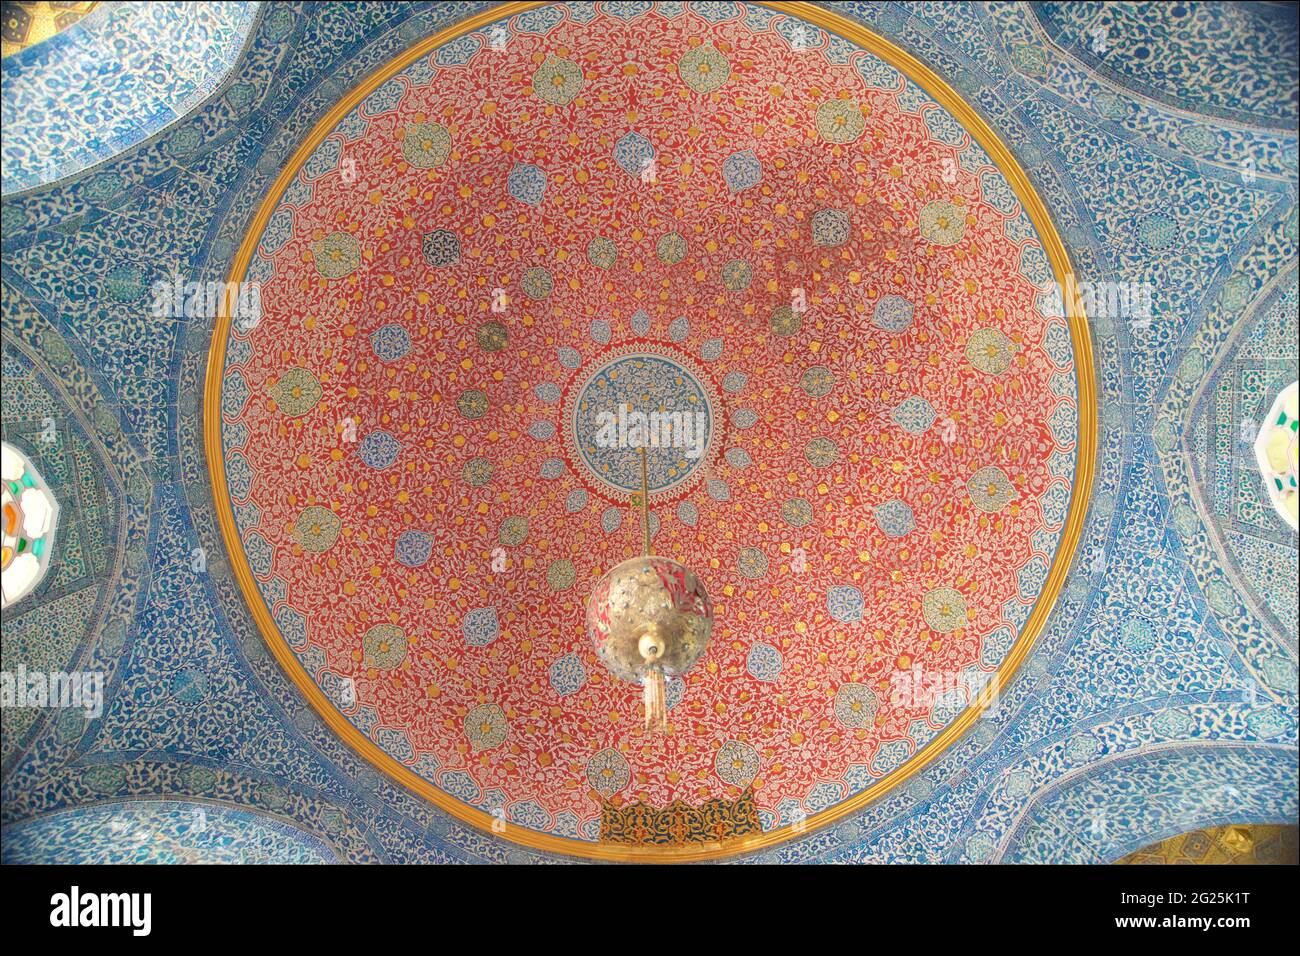 Le dôme au plafond orné du kiosque de Bagdad, Palais de Topkapi, Istanbul, Turquie Banque D'Images